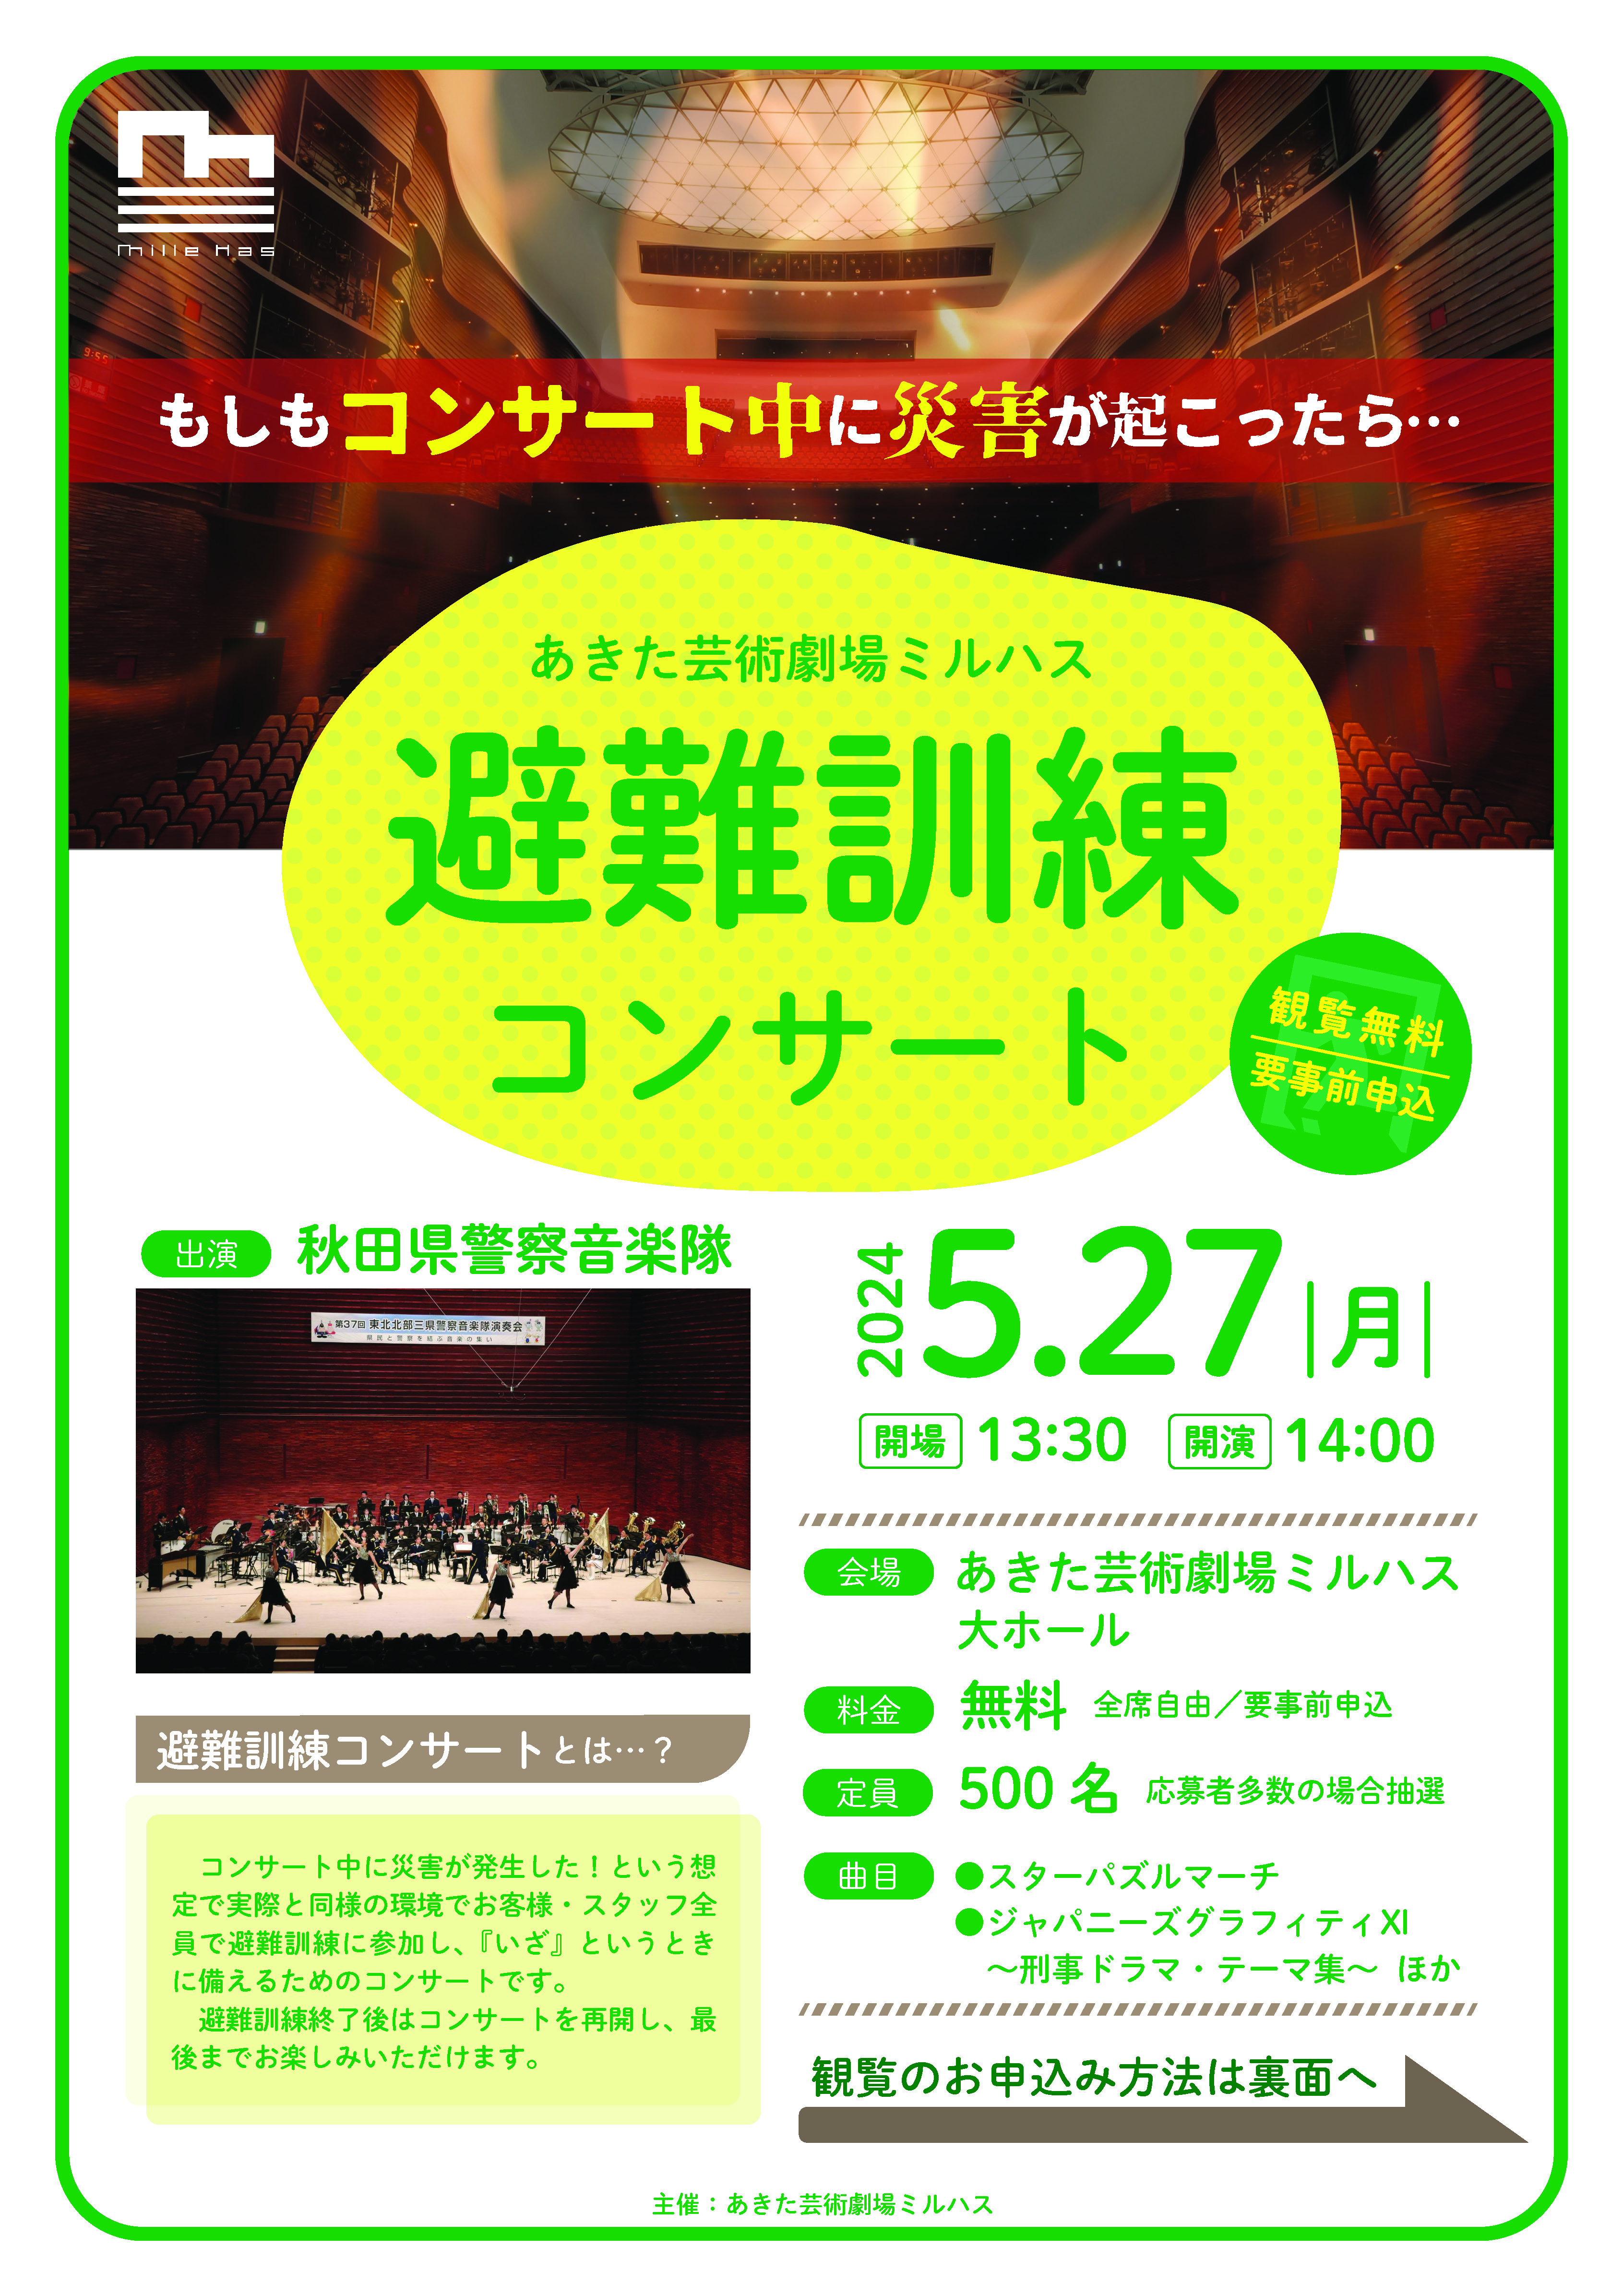 「避難訓練コンサート」のポスター